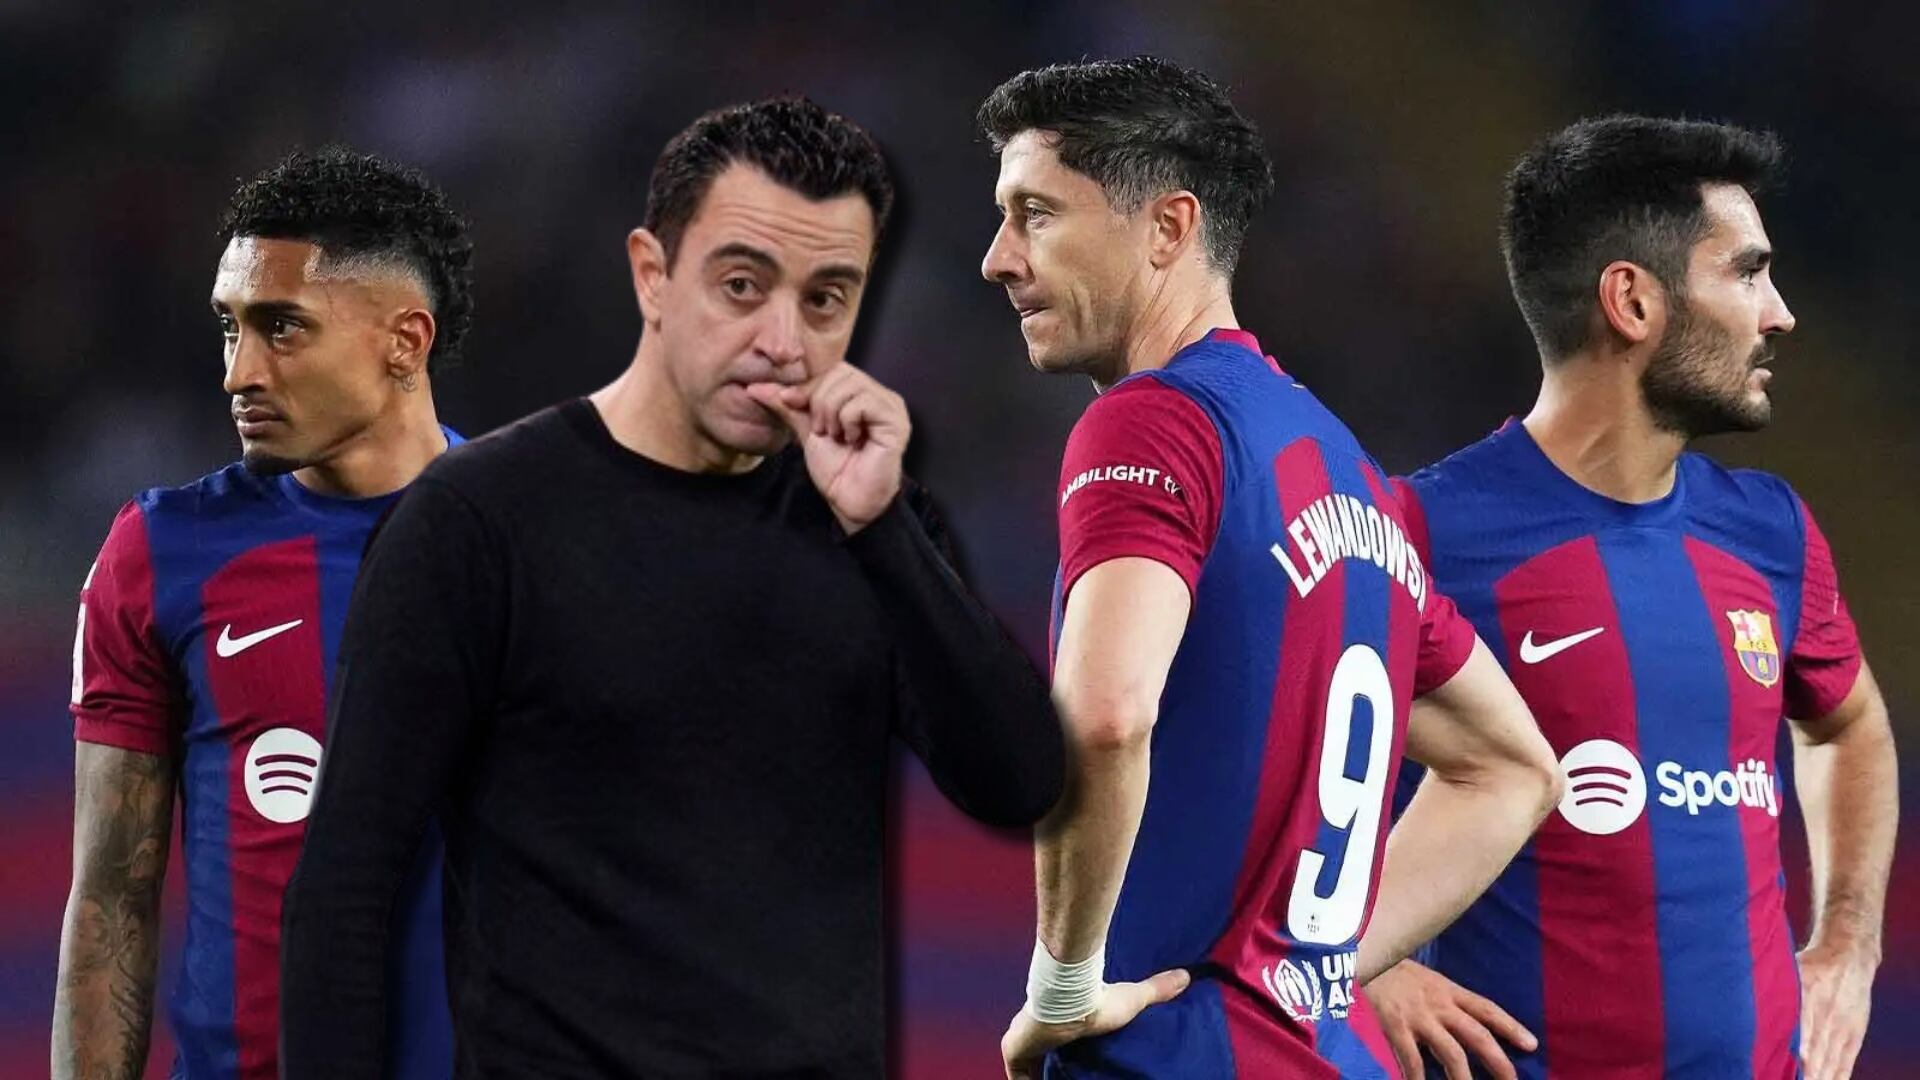 Hablaron mal a espaldas de Xavi, de esto se quejaron algunos jugadores del Barça